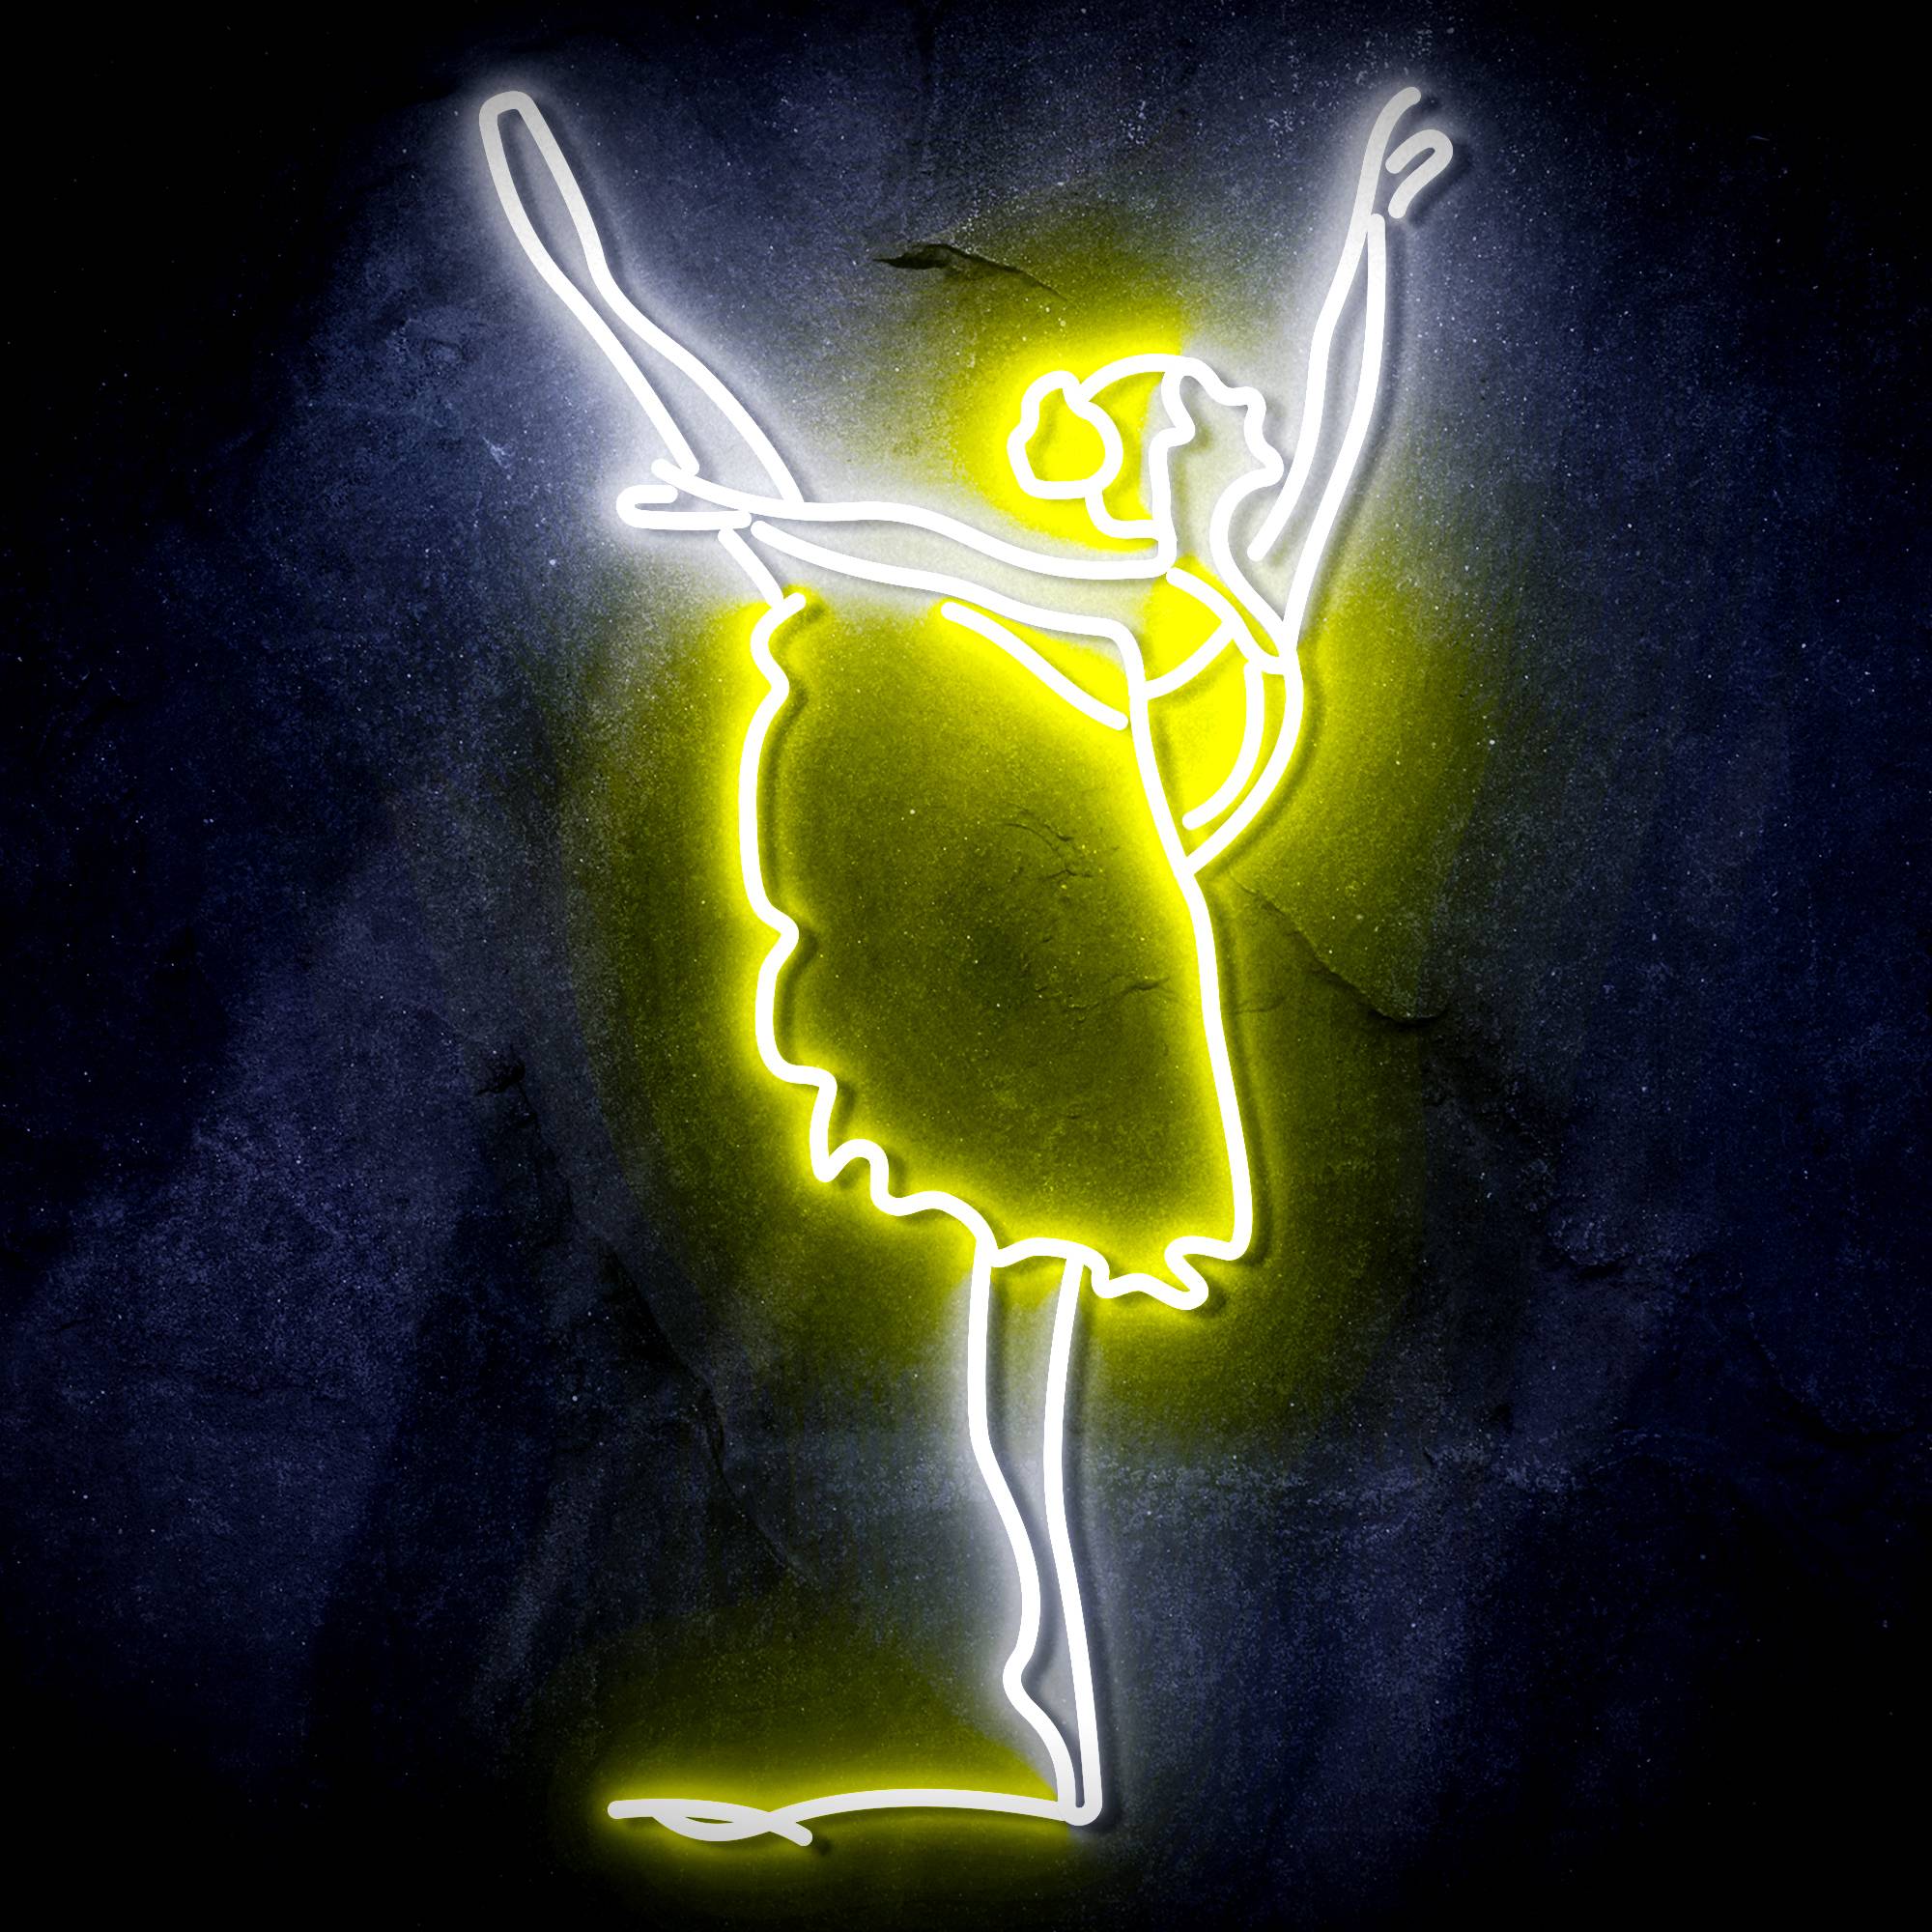 Lady Dancer LED Neon Sign